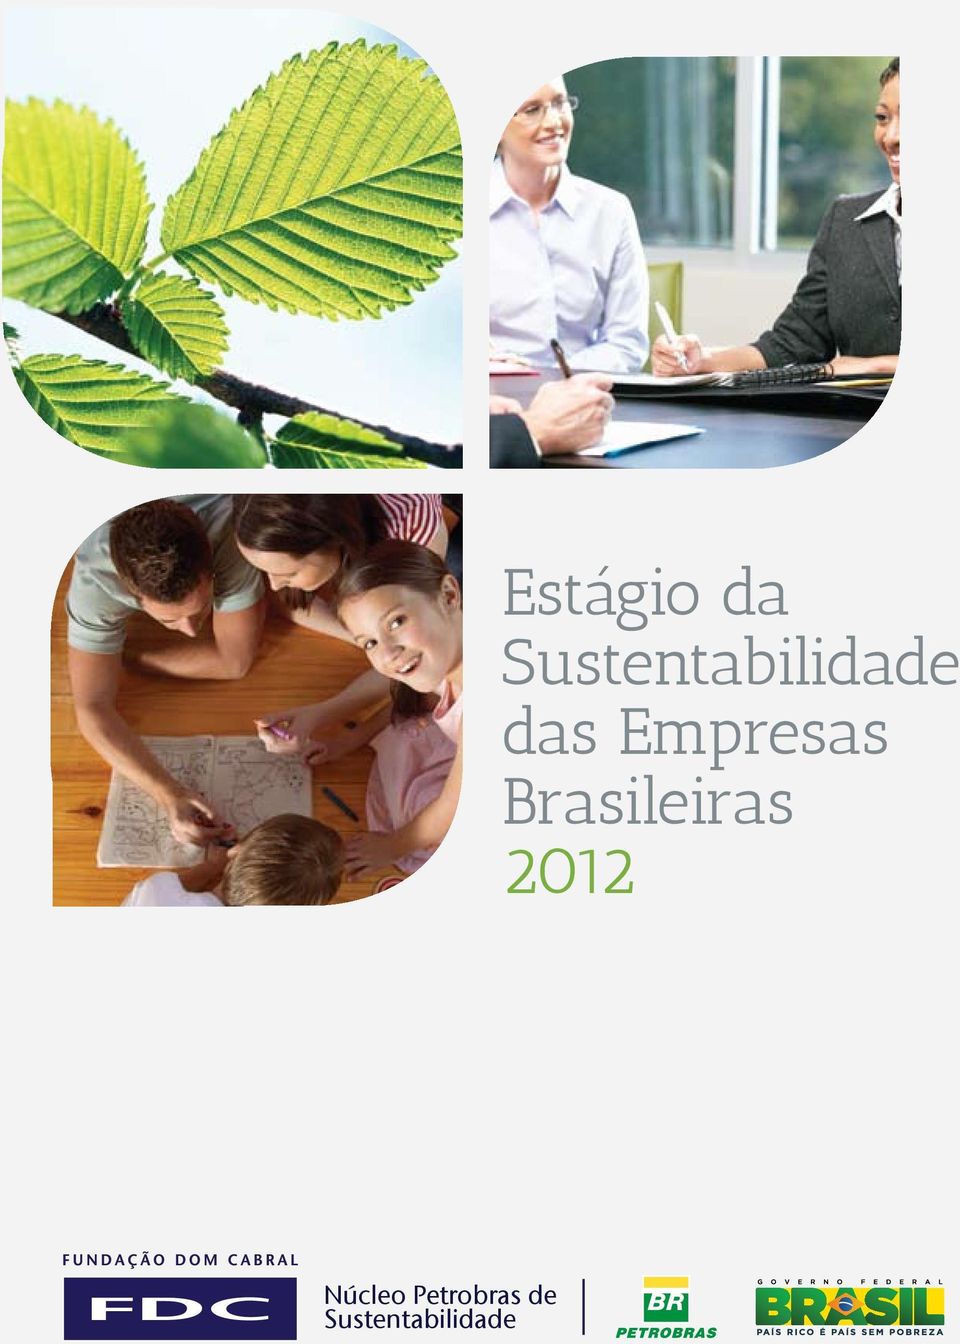 Empresas Brasileiras